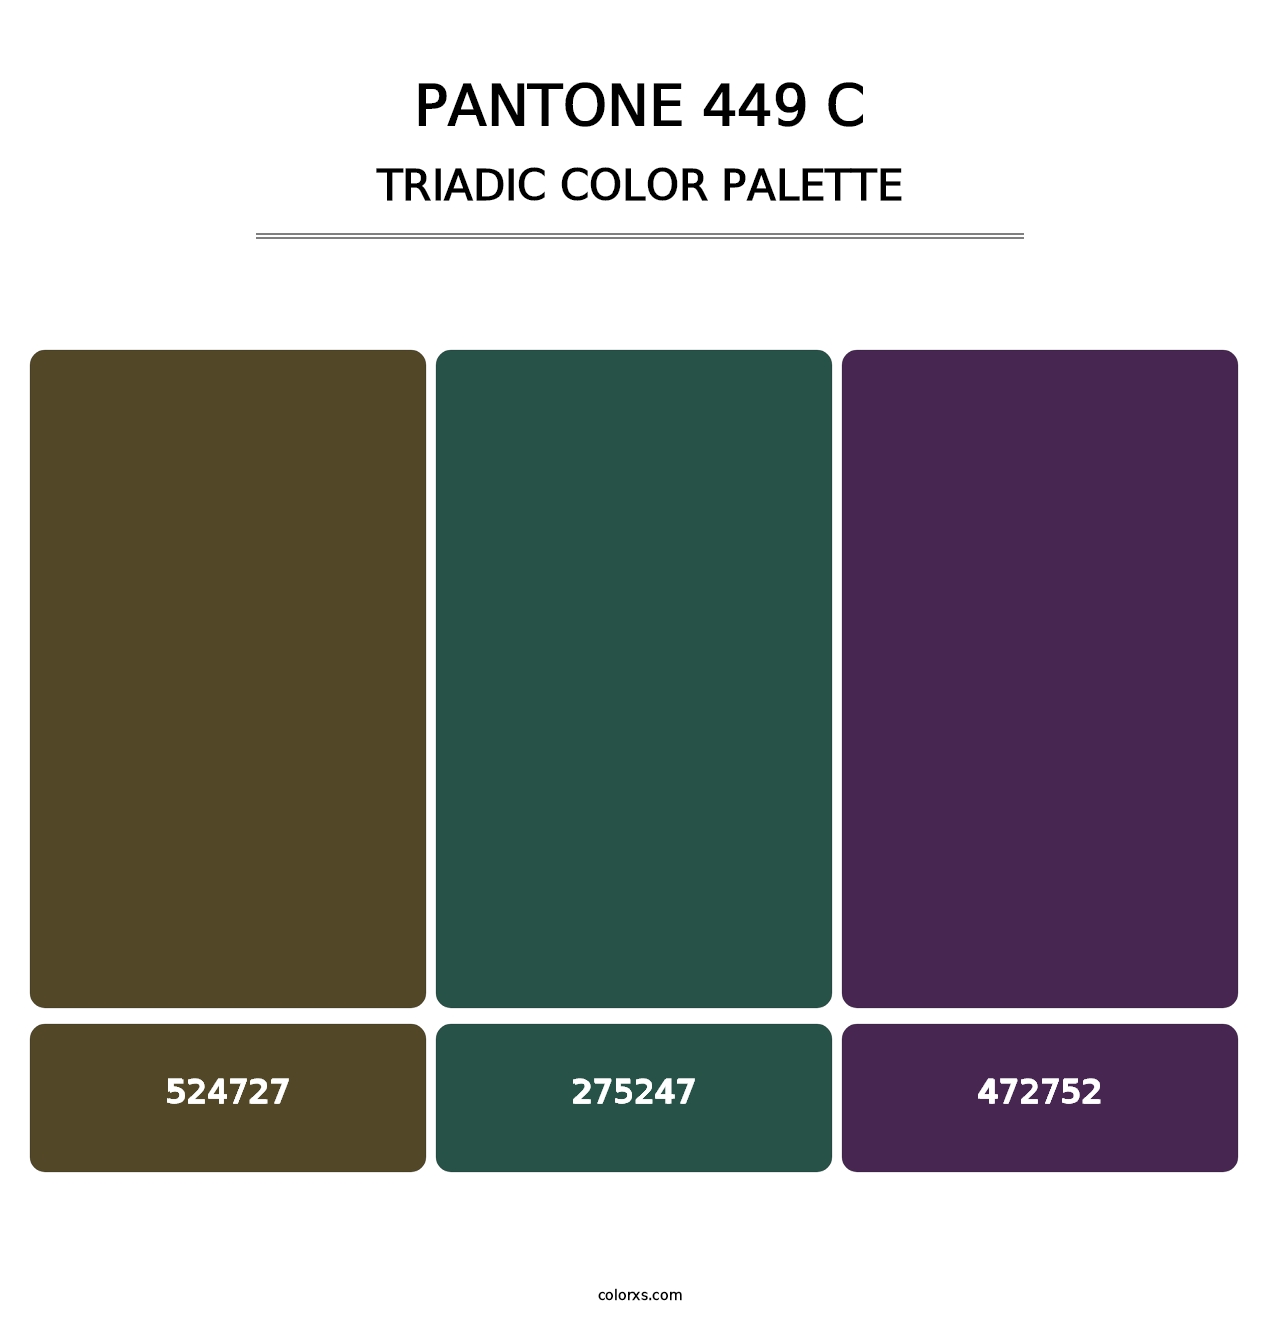 PANTONE 449 C - Triadic Color Palette